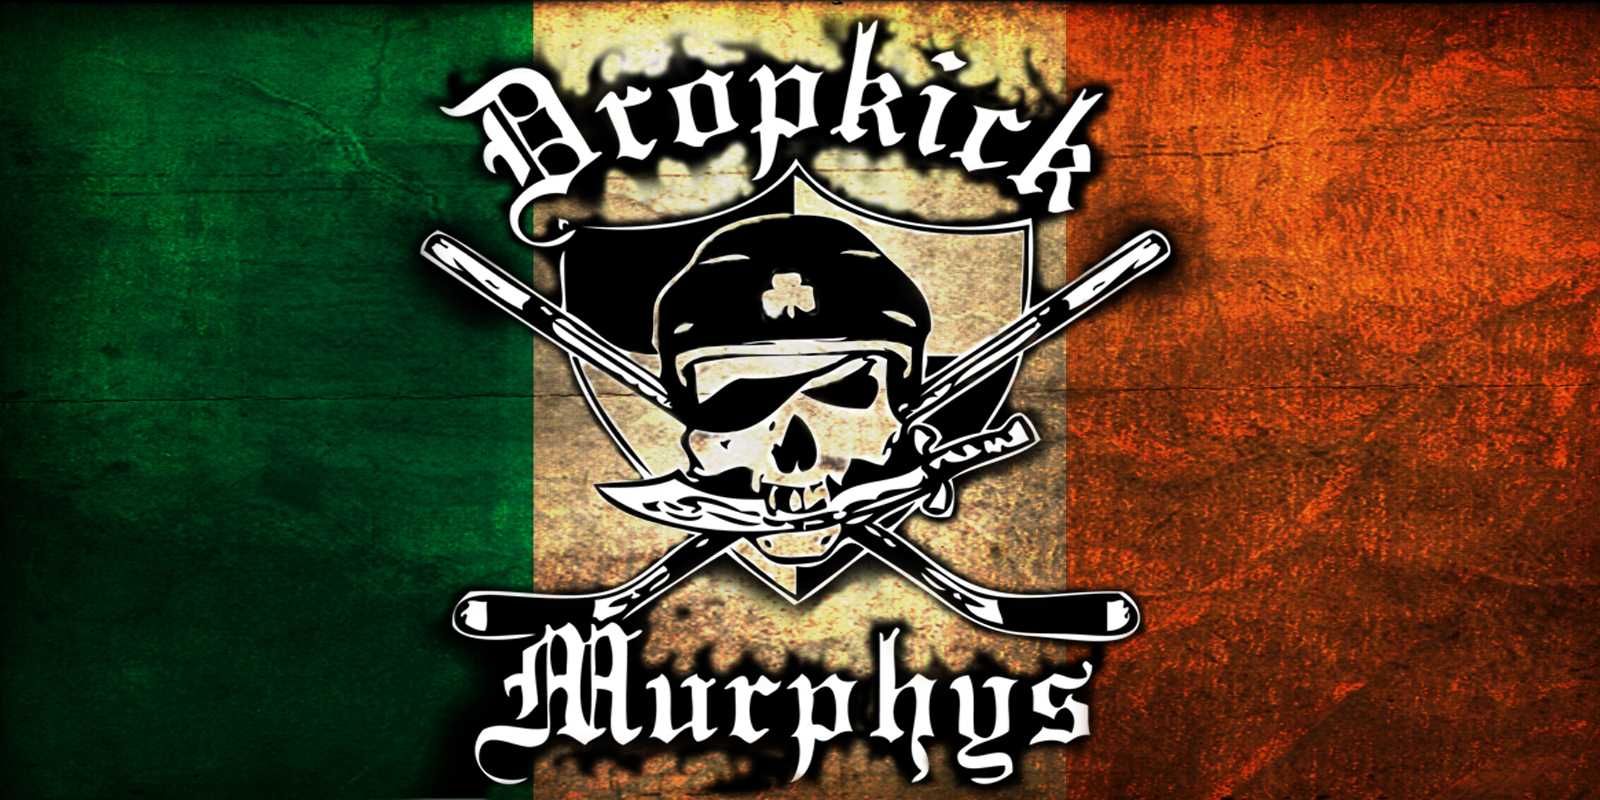 Dropkick Murphys Computer Wallpapers, Desktop Backgrounds - Dropkick Murphys Band Logo , HD Wallpaper & Backgrounds